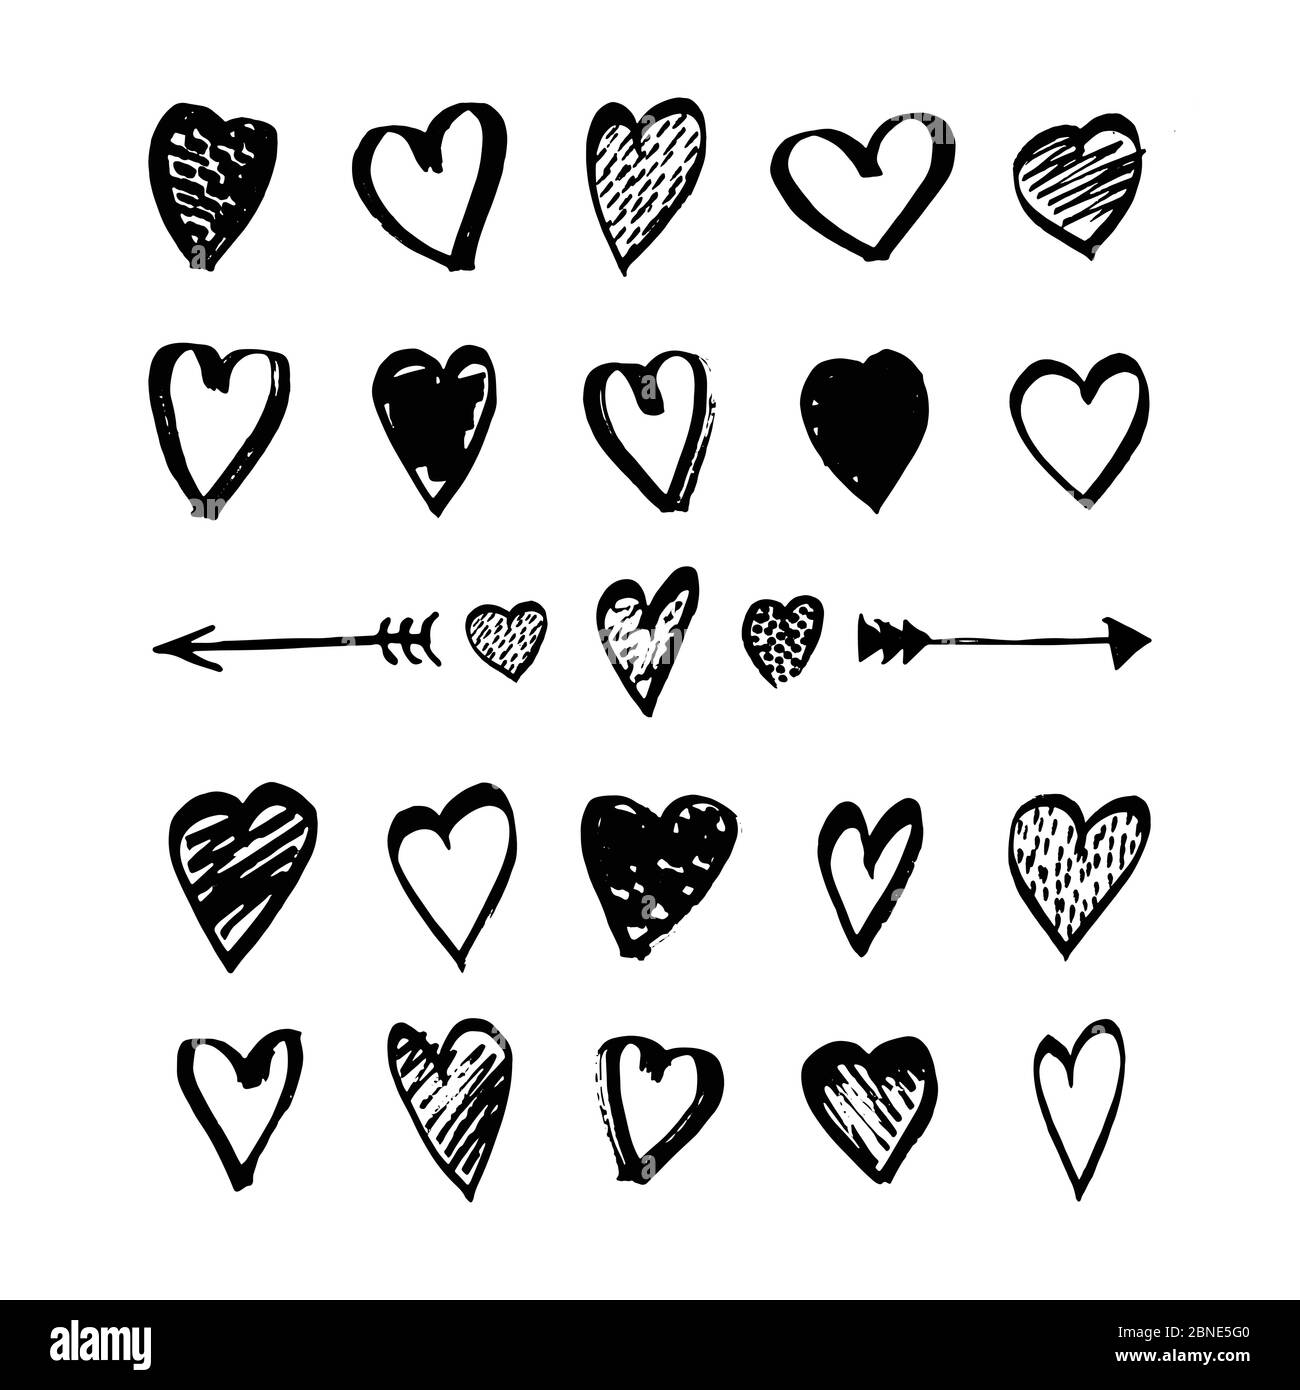 Herz und Pfeile Symbole von Hand gezeichnet im Doodle-Stil gesetzt. Skizzenhafte Designelemente für Valentinstag oder Hochzeit. Schwarze Love-Symbole auf Weiß isoliert. Ve Stock Vektor